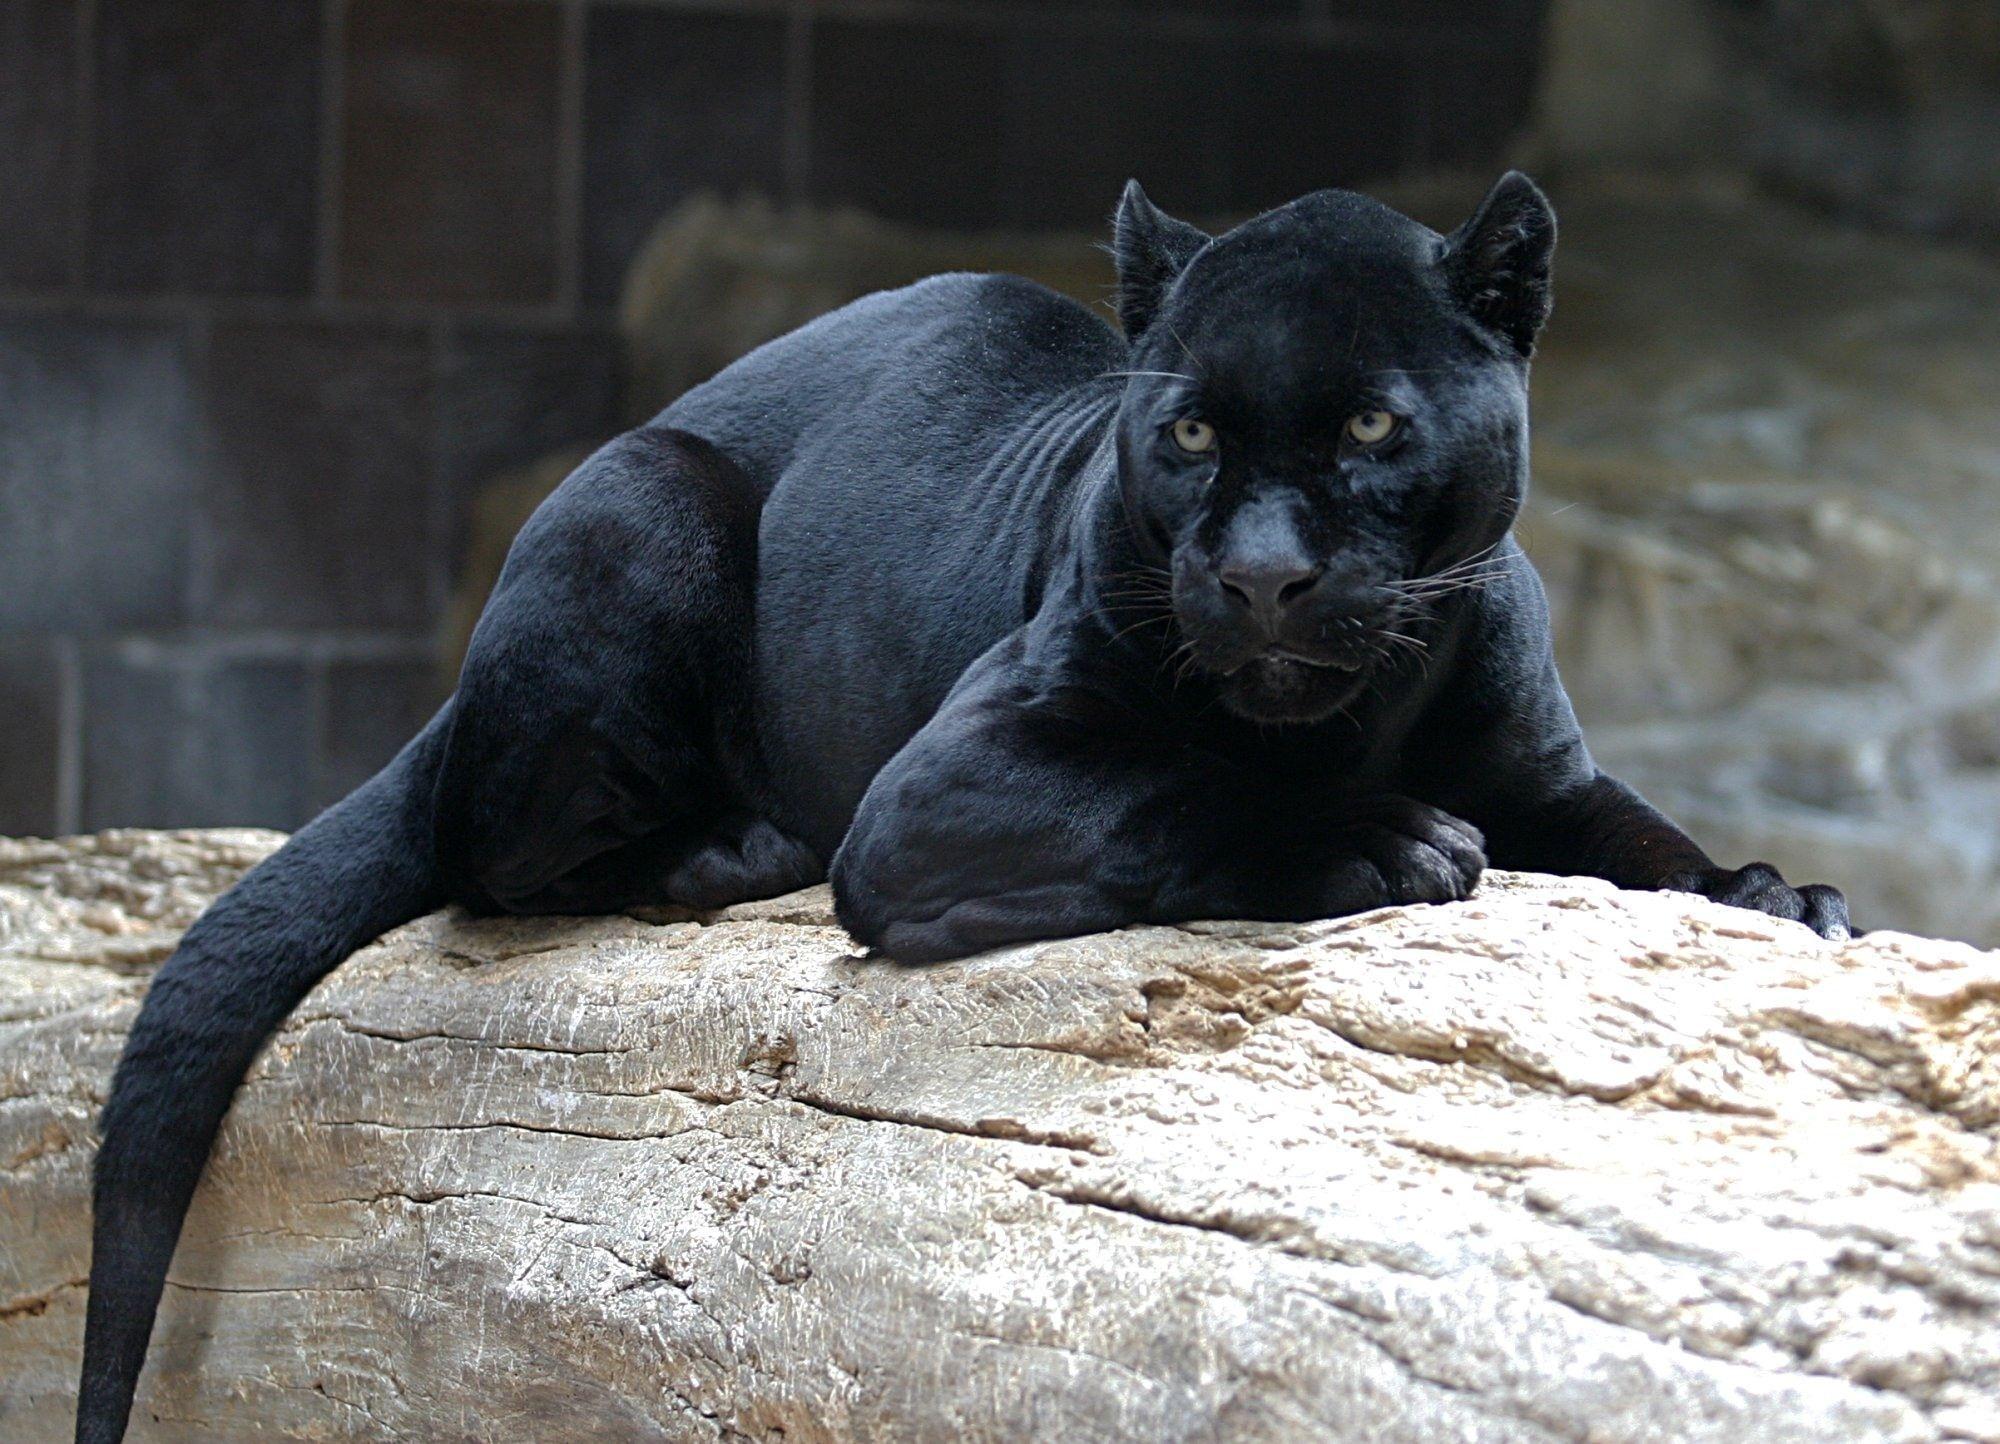 HD wallpaper: black jaguar, predator, Panther, jaw, animal, mammal, black  Color | Wallpaper Flare